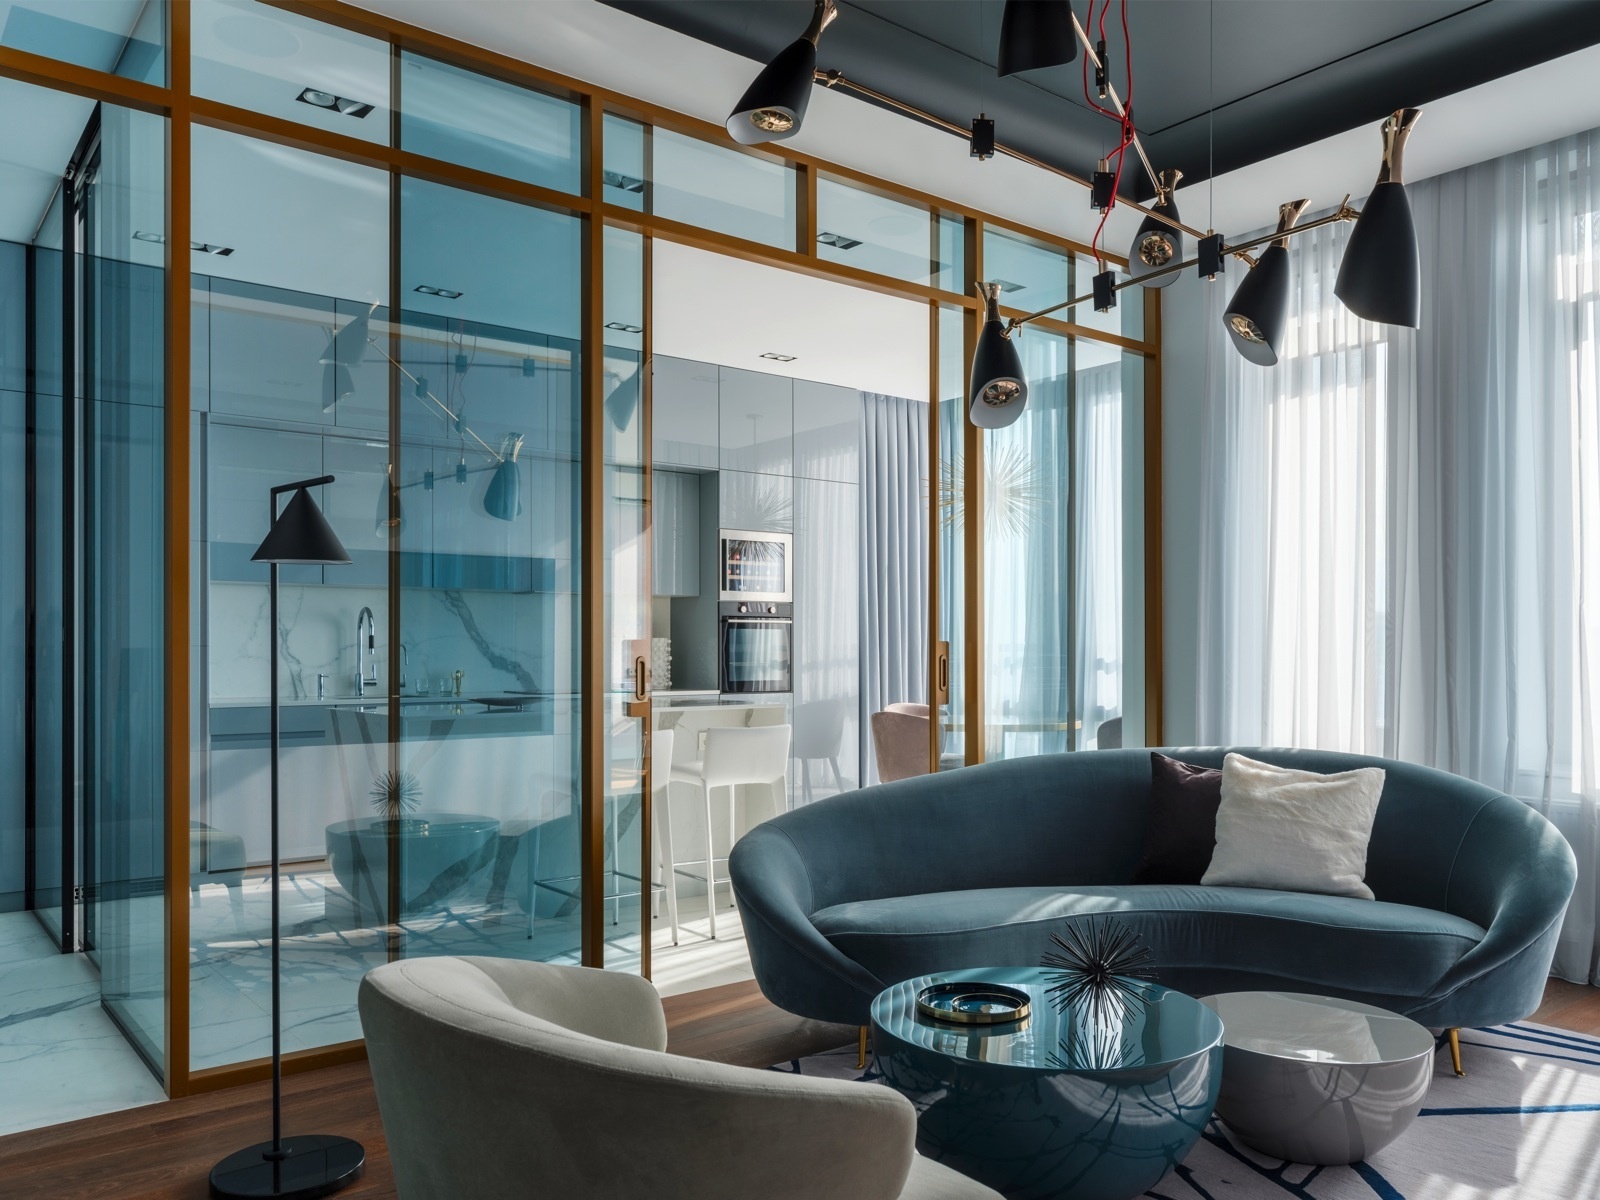 Căn phòng không sử dụng nhiều màu sắc nhưng vẫn quyến rũ nhờ sofa hình bán nguyệt màu xanh lam. Nó cũng là tiền đề để NTK nội thất bổ sung bàn nước và cửa kính trượt cùng tone màu để tạo nên sự hấp dẫn thị giác ấy.